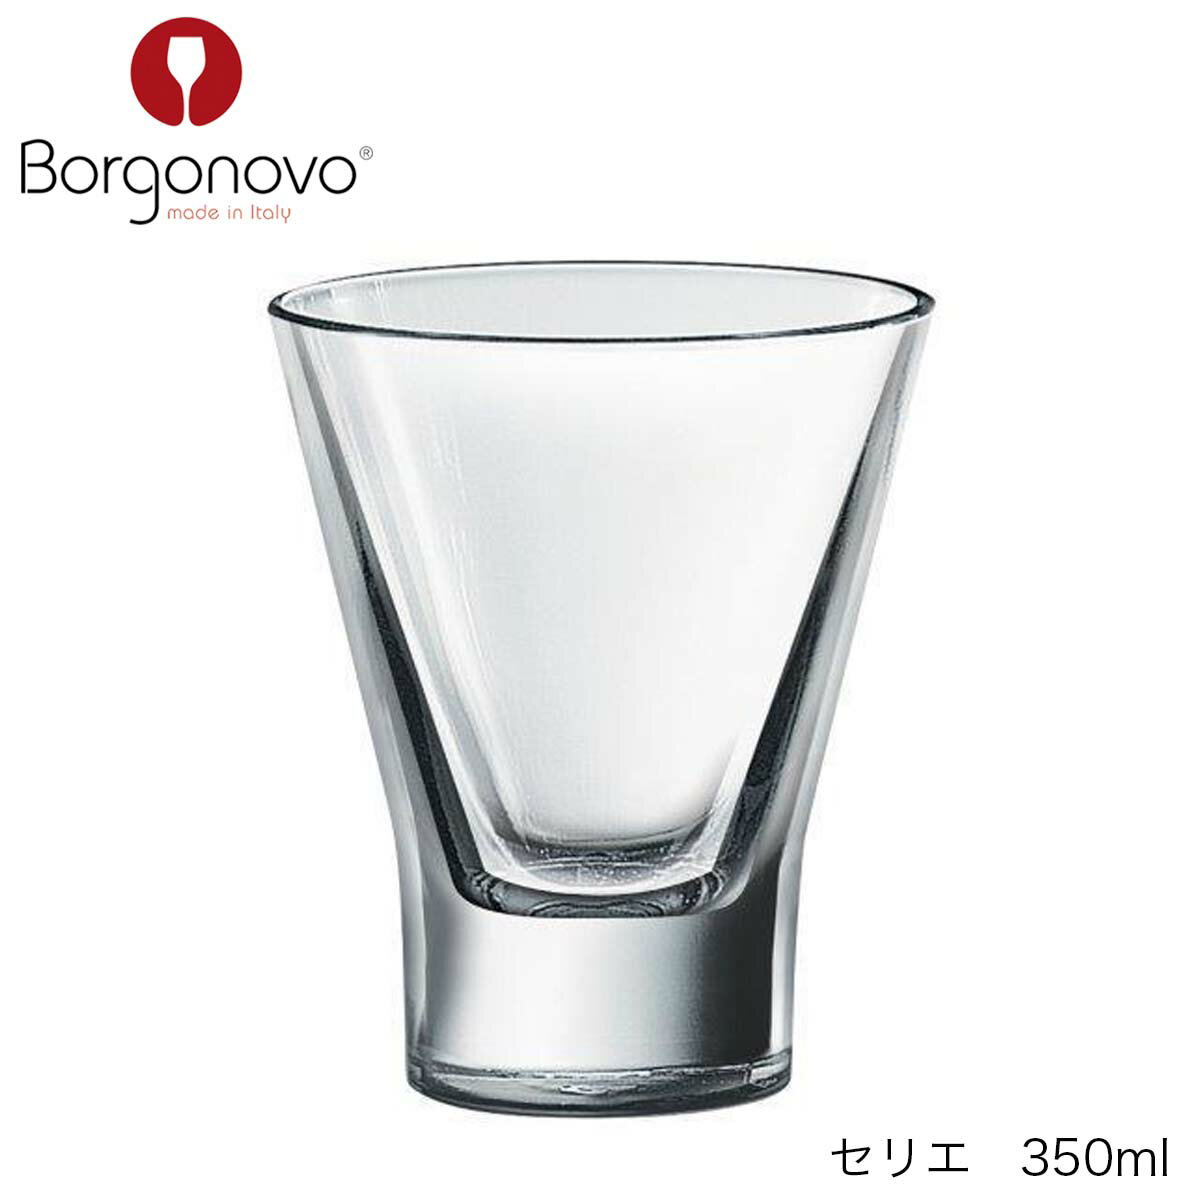 4個セットでの販売です。 口径100mm　高さ117mm 容量　350ml　満杯容量 素材　ソーダガラス【Borgonovo ボルゴノーヴォ】 1950年にイタリアのミラノから西80kmにあるBorgonovoで設立されました。 今、ヨーロッパでも最も勢いのあるグラスメーカーです。